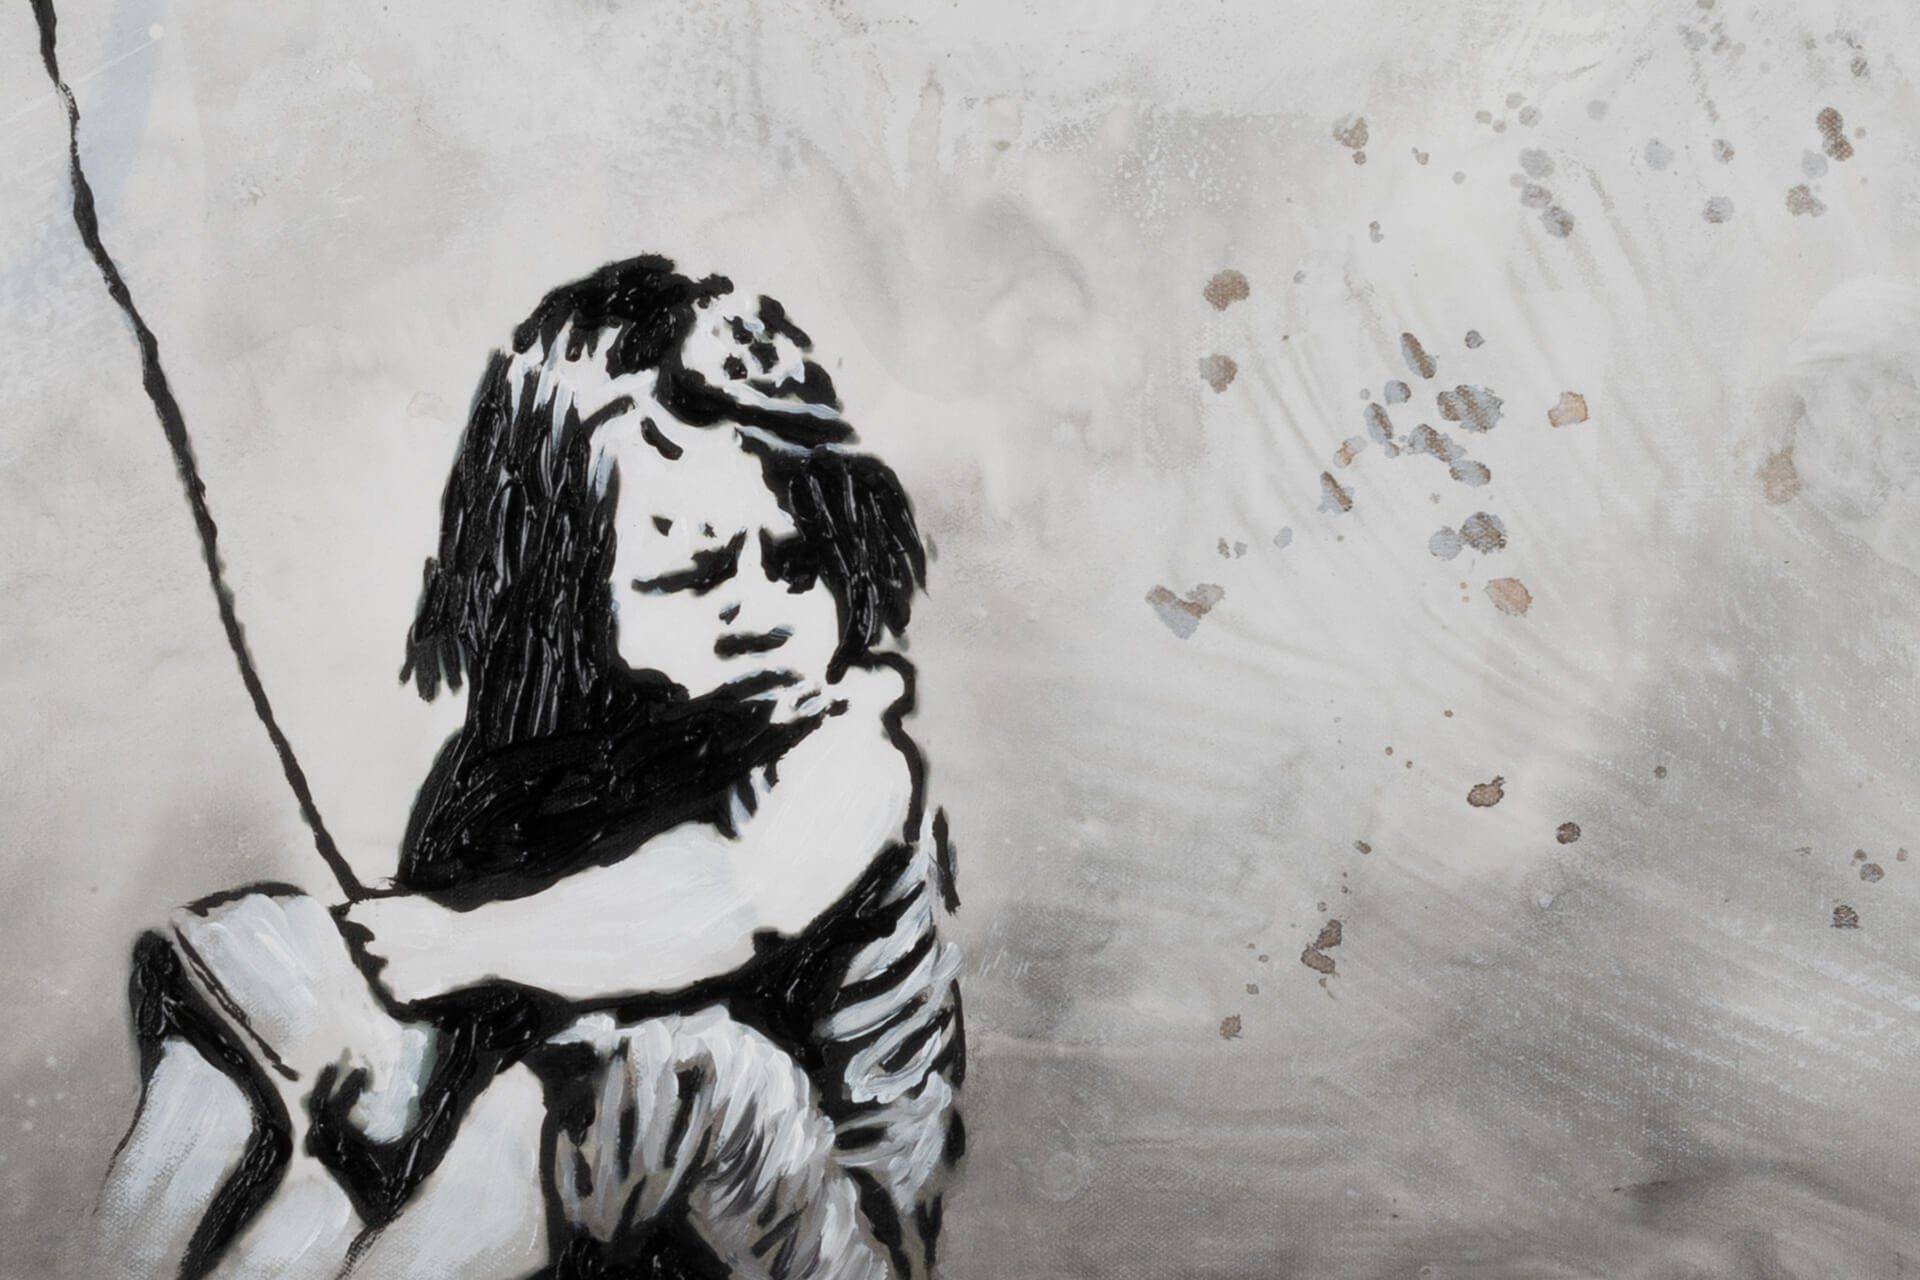 KUNSTLOFT Gemälde Banksy's HANDGEMALT Future 100% Wandbild 120x60 Wohnzimmer Leinwandbild cm, No